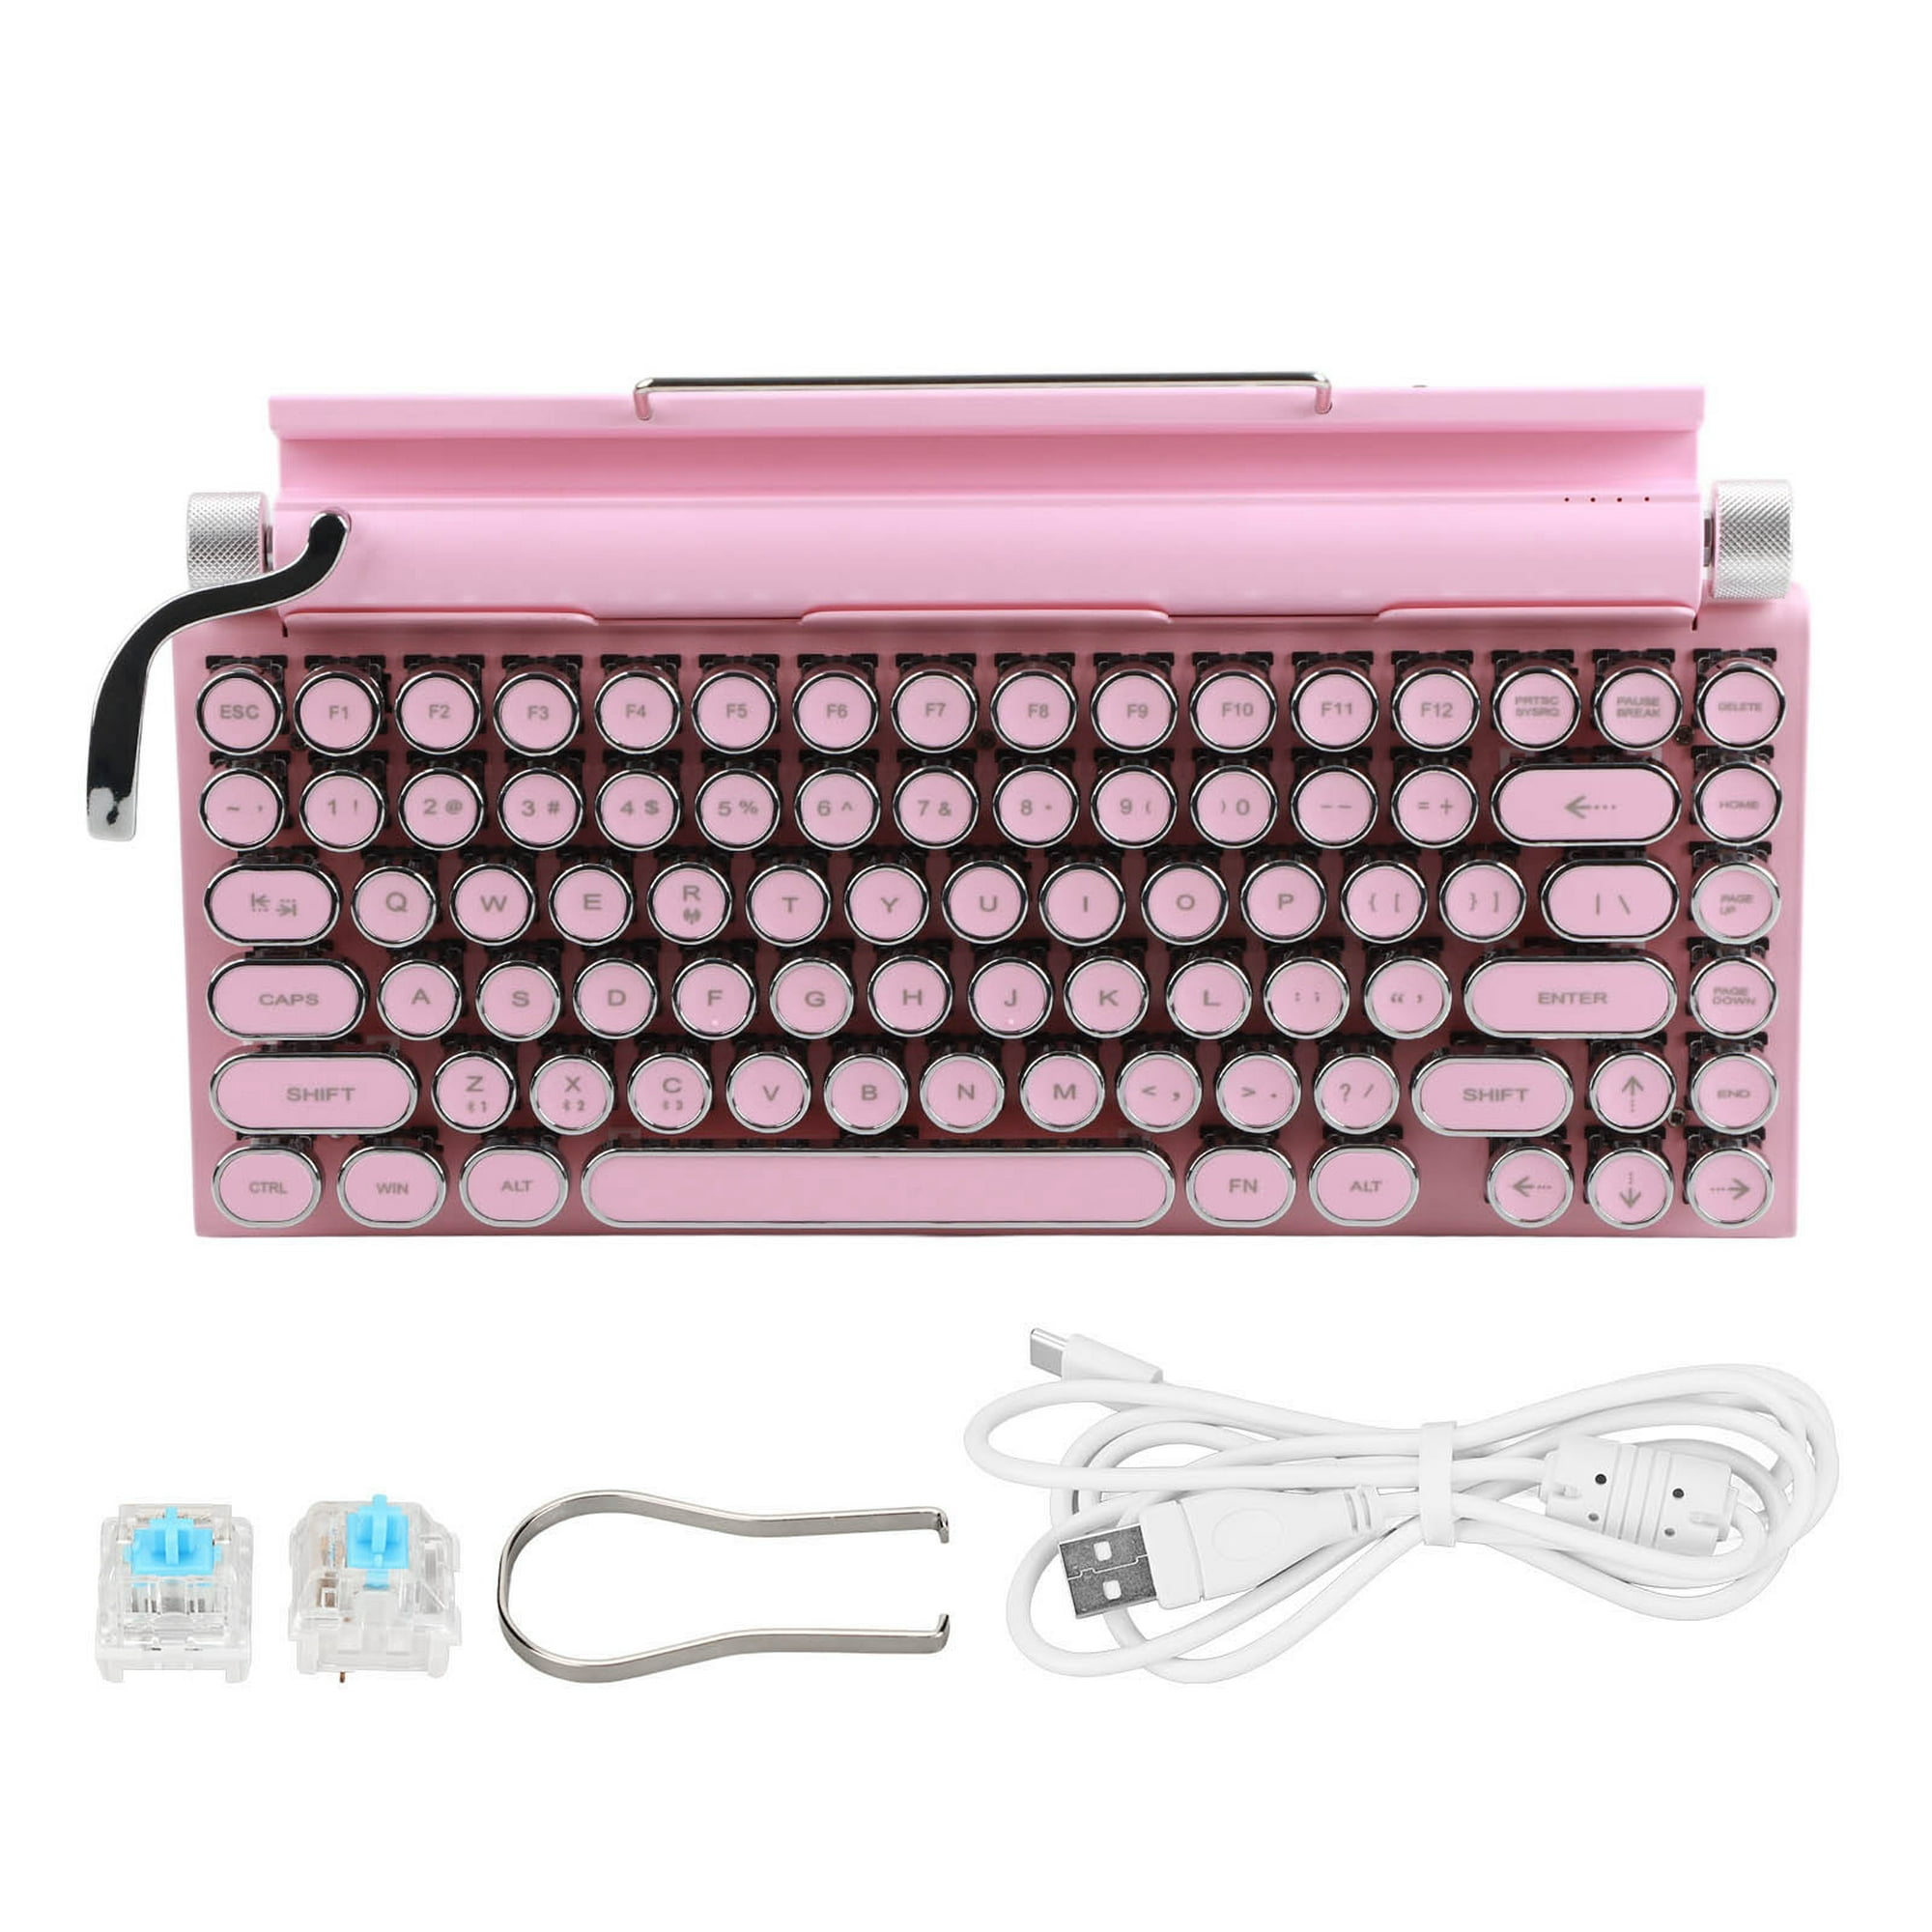 Teclado mecánico para máquina de escribir, 83 teclas, interruptor azul, Bluetooth  5,0, compatible con 3 dispositivos, FN Master, estilo Retro, teclado  redondo, color rosa